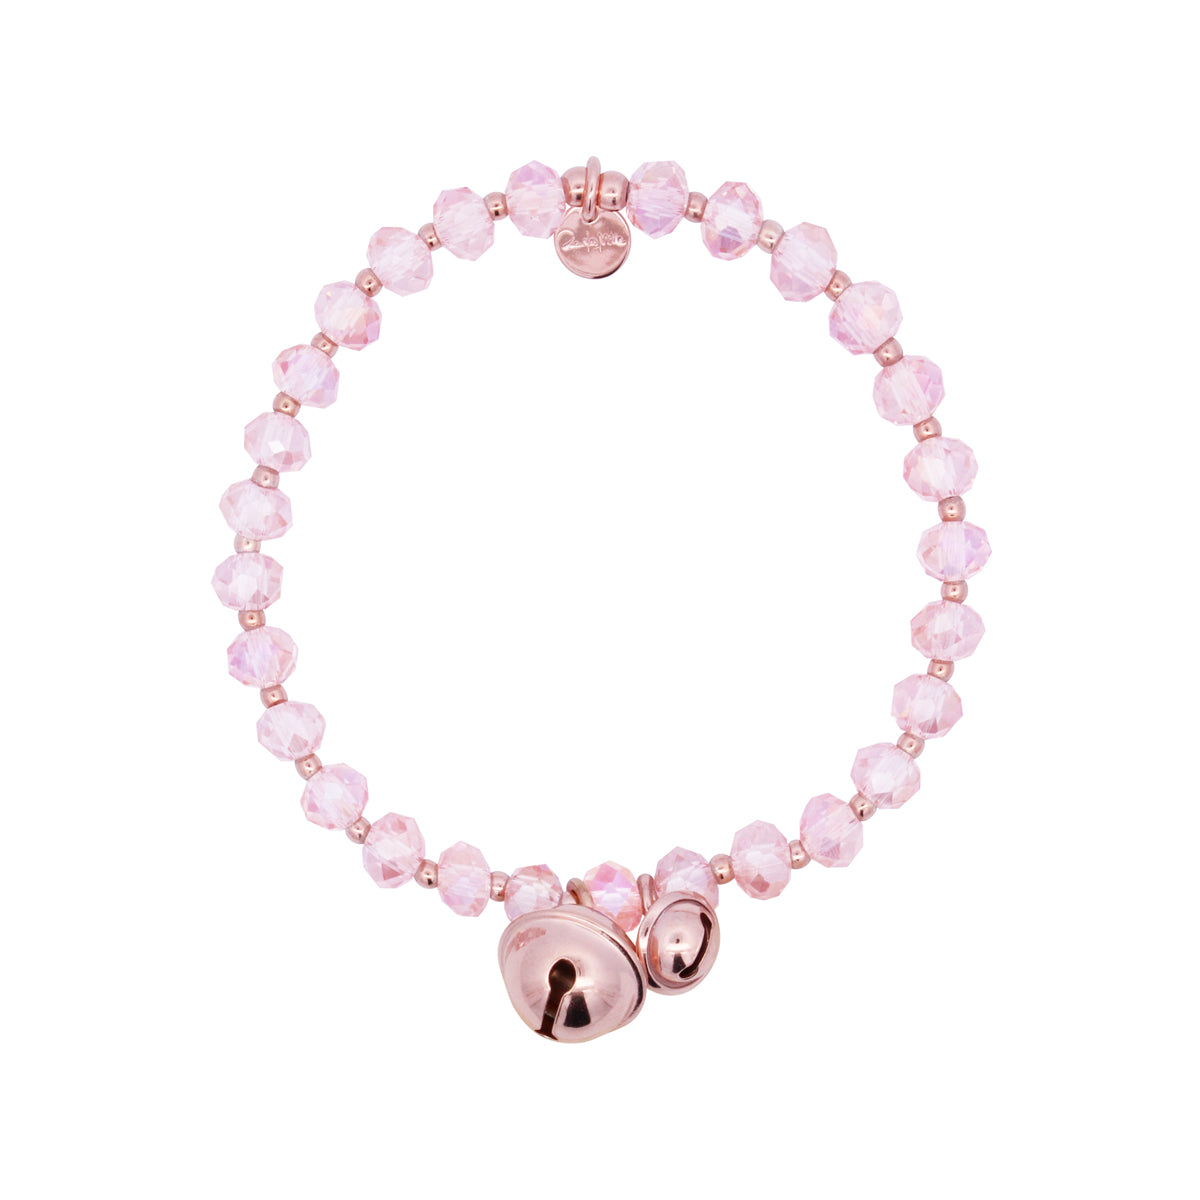 Bracelets - Elastic bracelet pink crystals and bells - Crystal Rainbow  - 1 | Rue des Mille